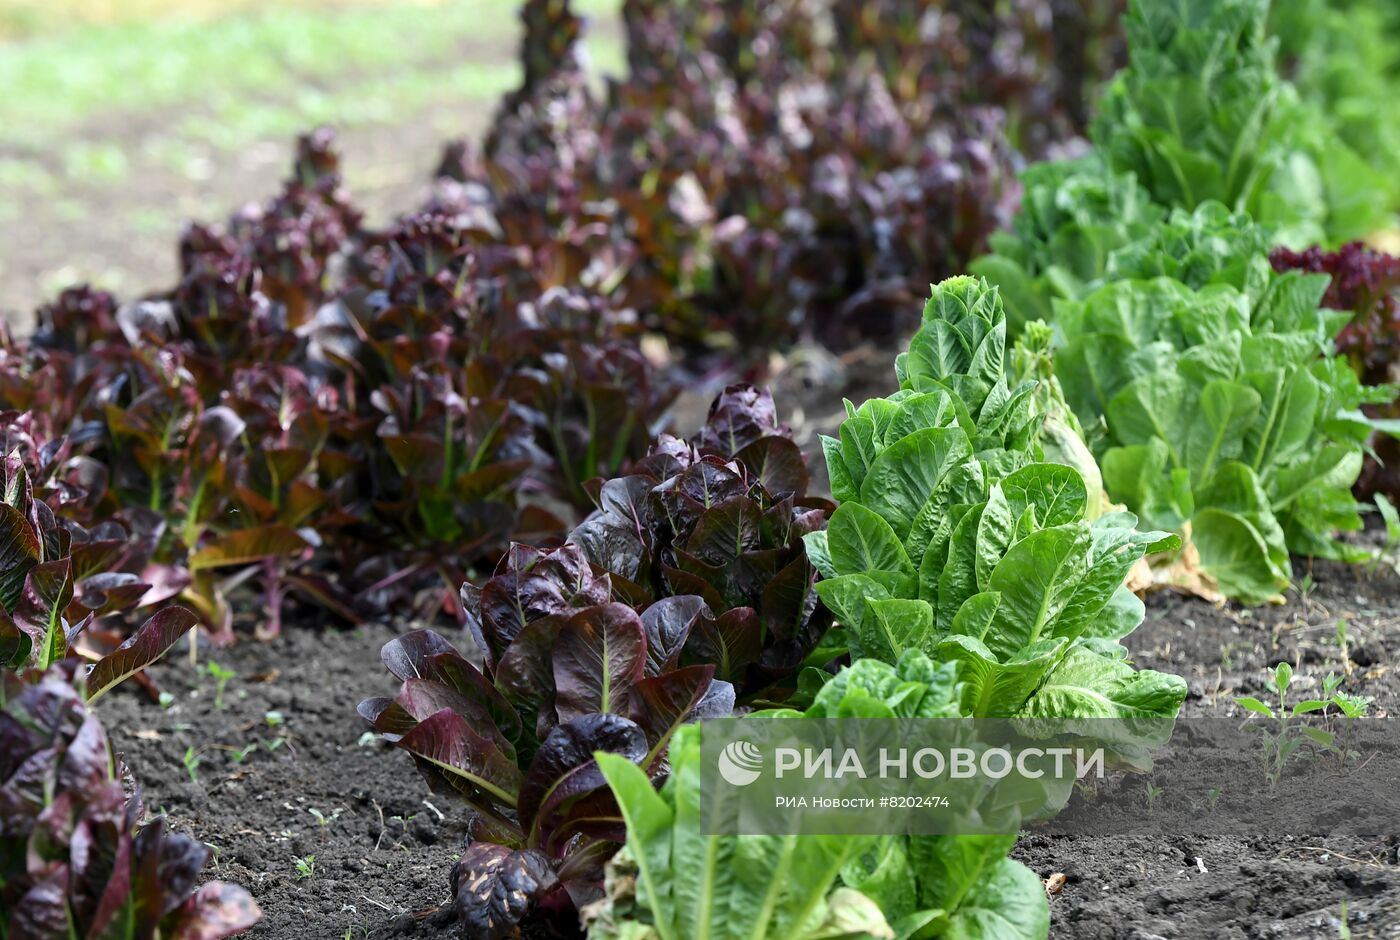 Фермерские хозяйства в Мелитопольском районе